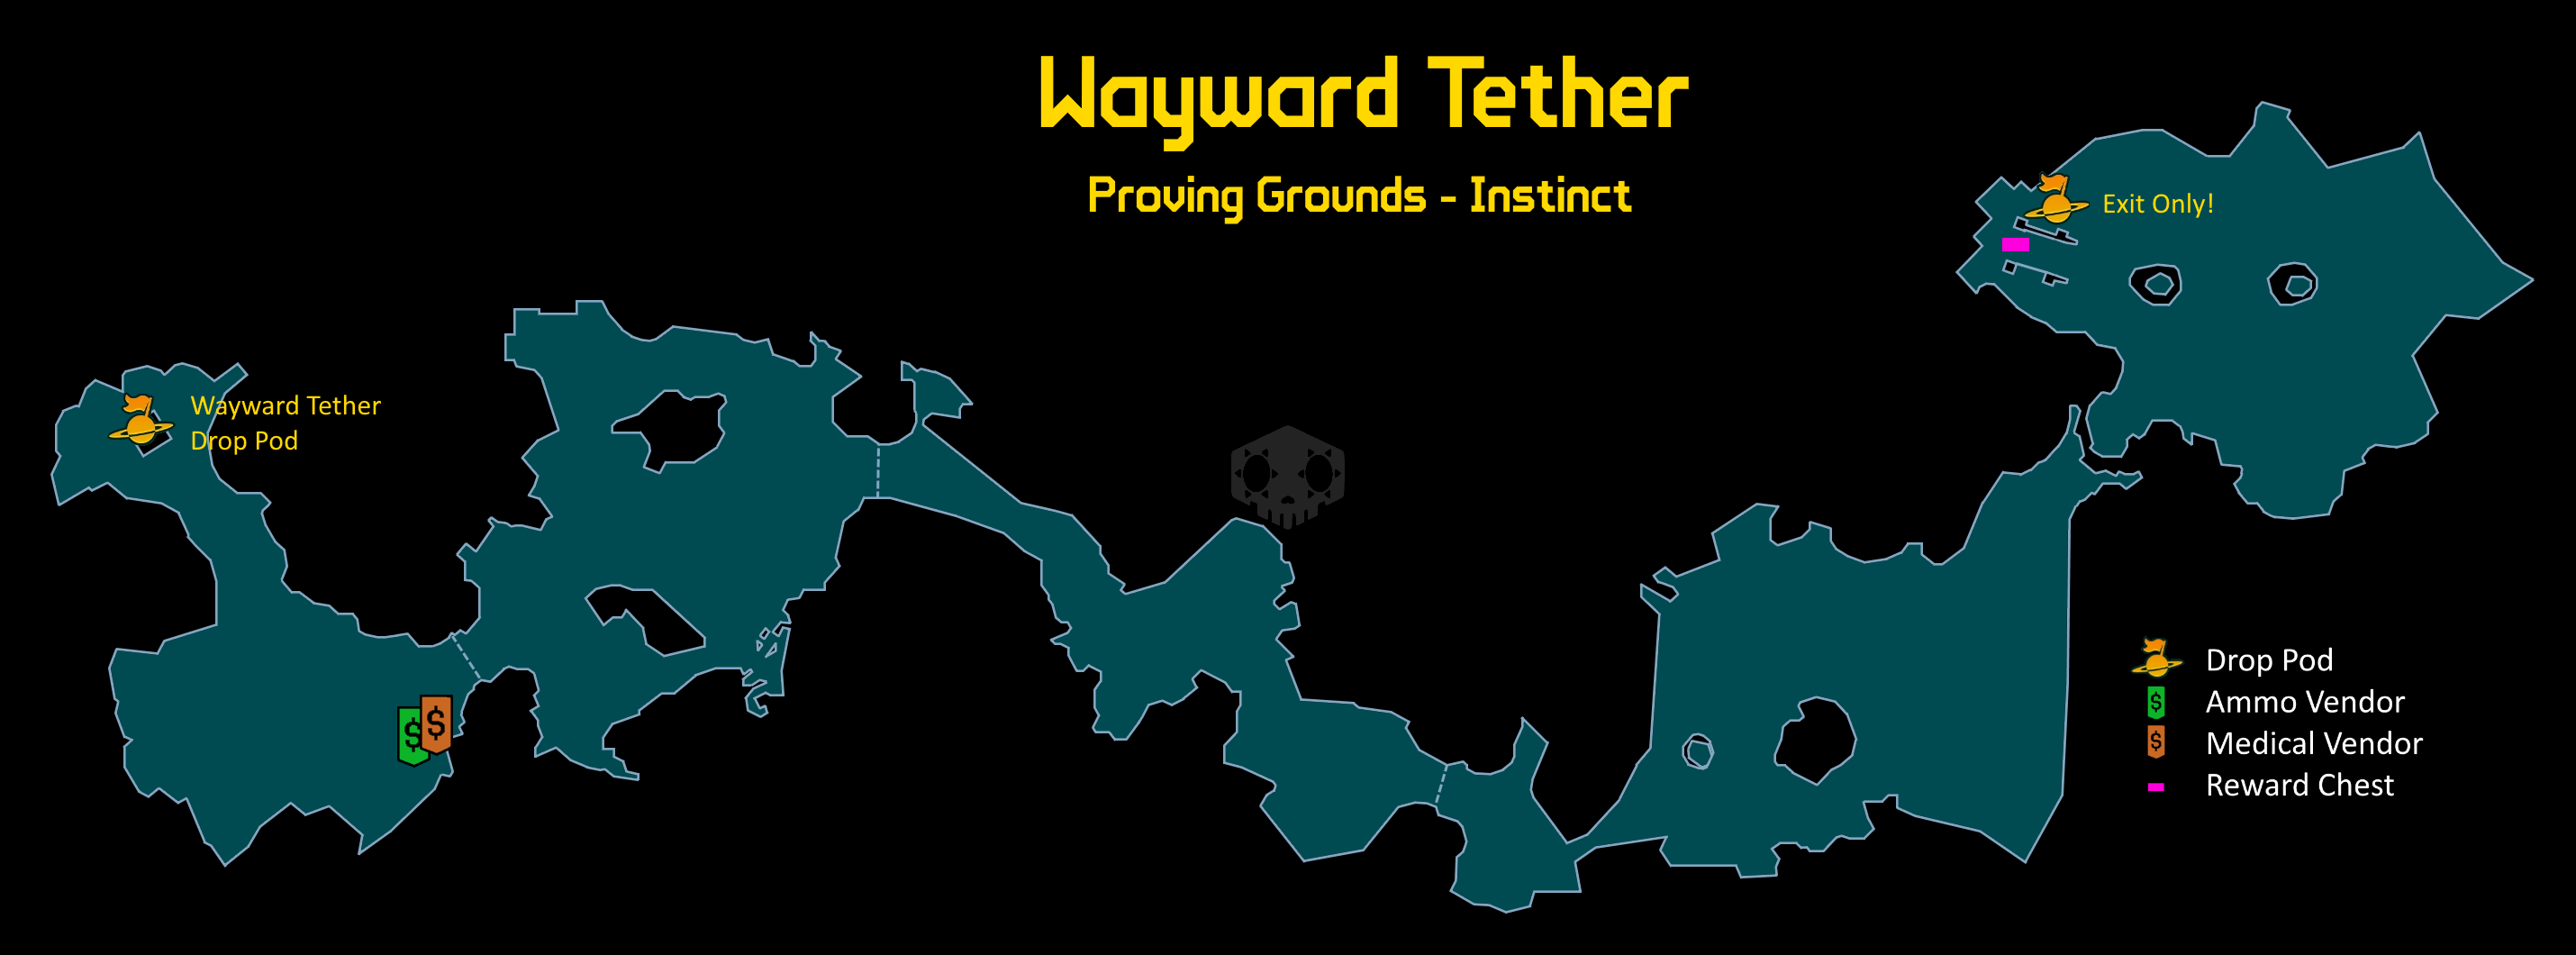 파일:Wayward_Tether_map.png